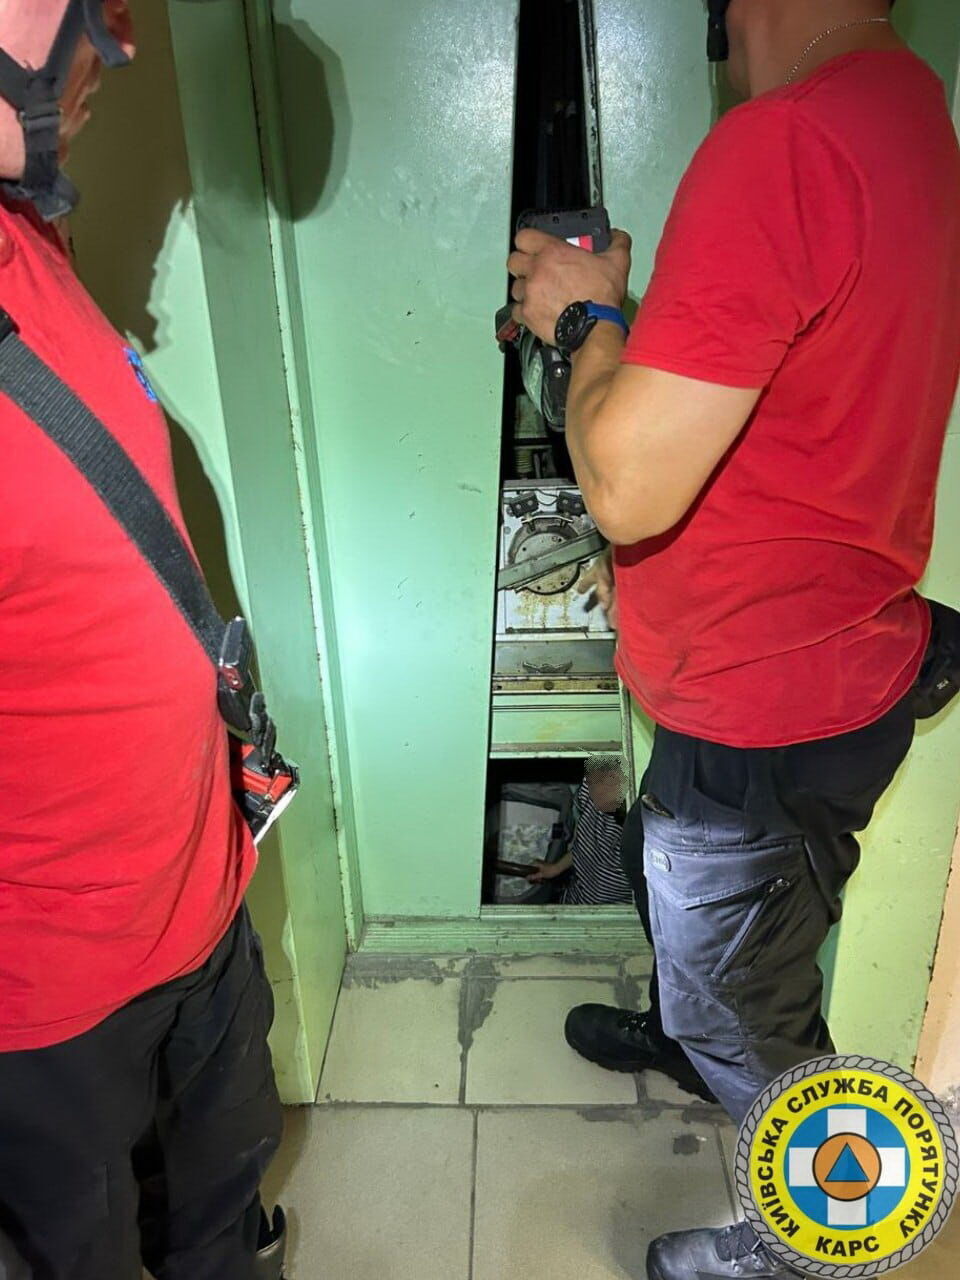 Застряли в лифте: в Киеве спасатели пришли на помощь женщине с 6-месячным младенцем. Фото и подробности